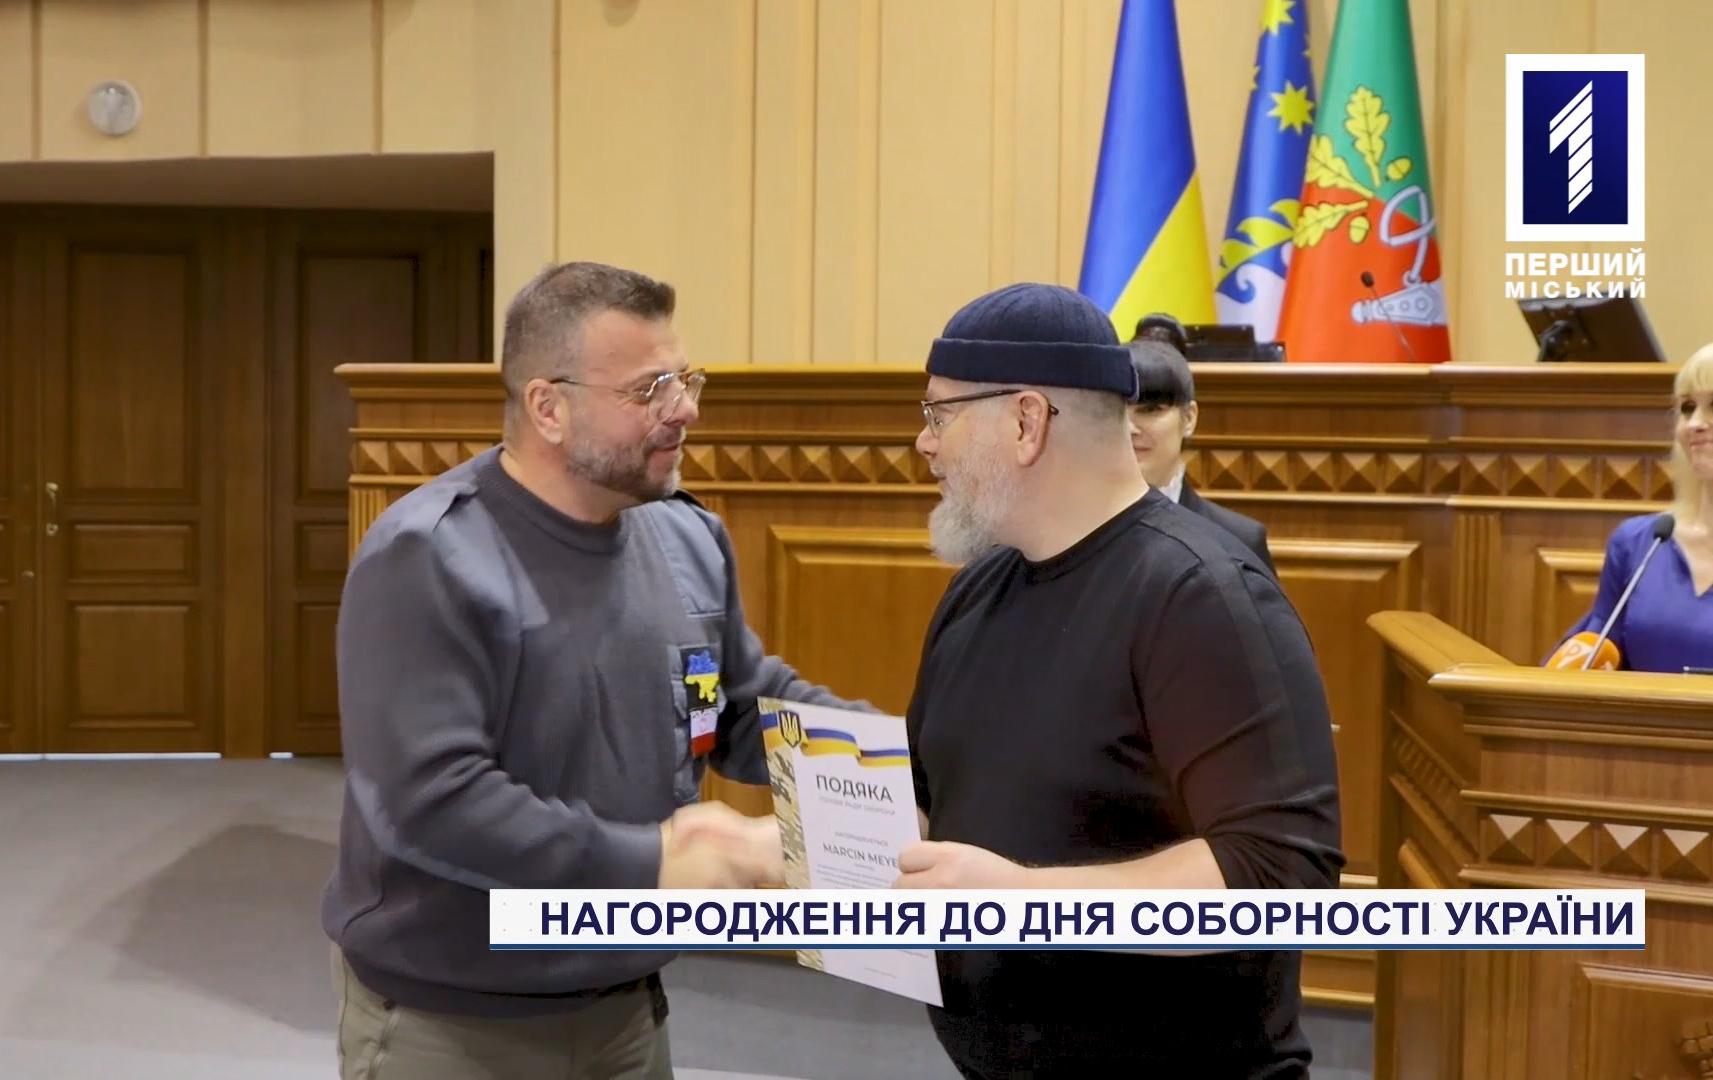 Жителей Кривого Рога наградили в канун Дня соборности Украины за вклад в жизнь города